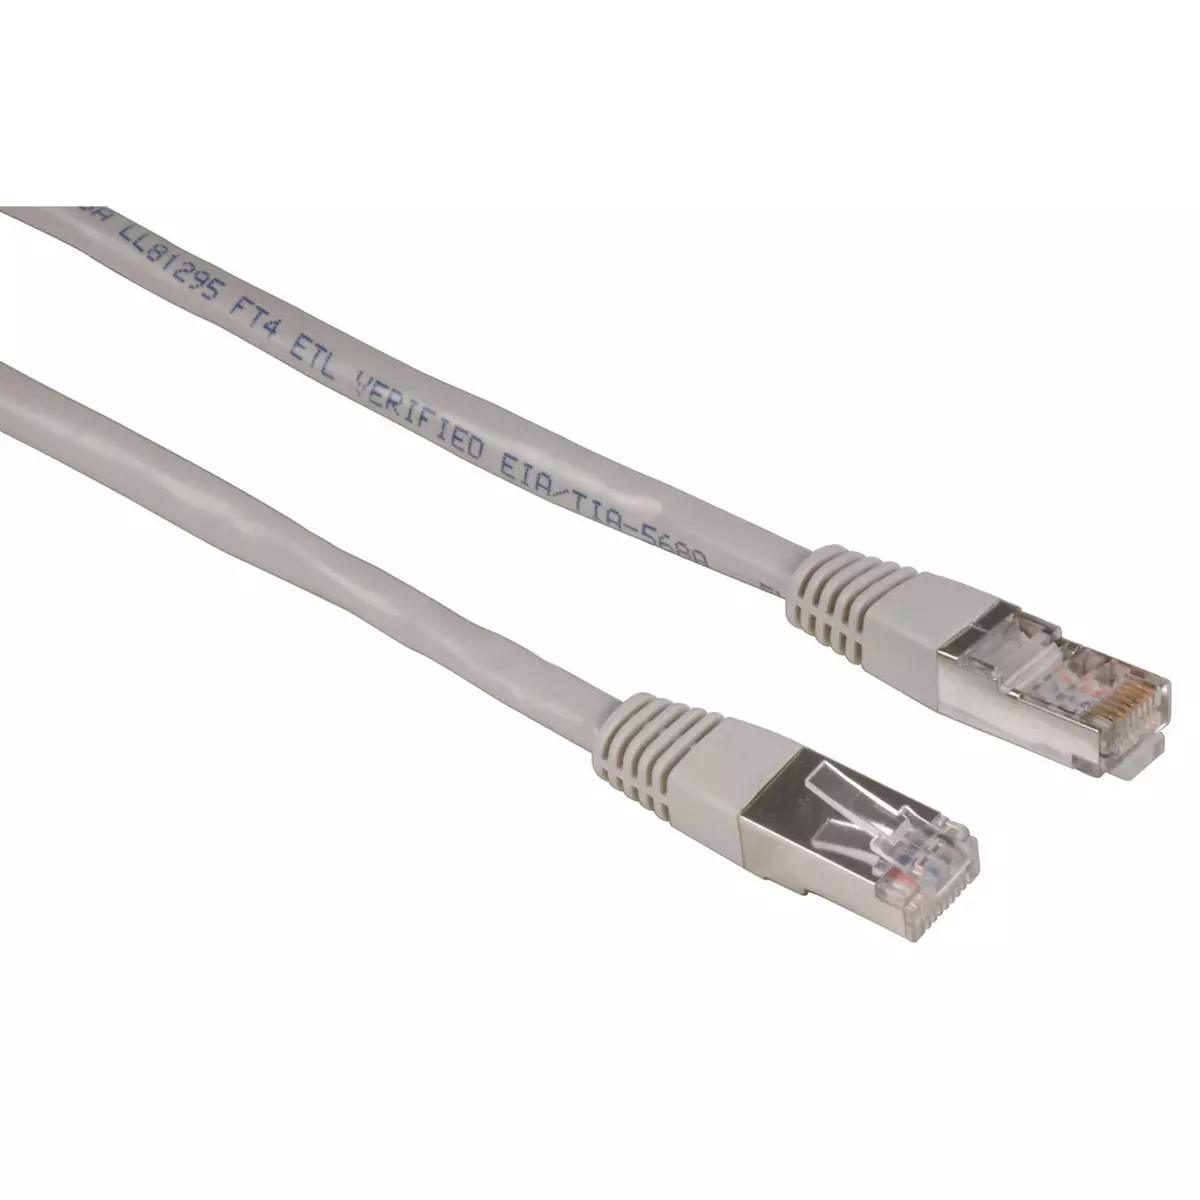 Comment choisir ses câbles Ethernet ou câbles RJ45 ?